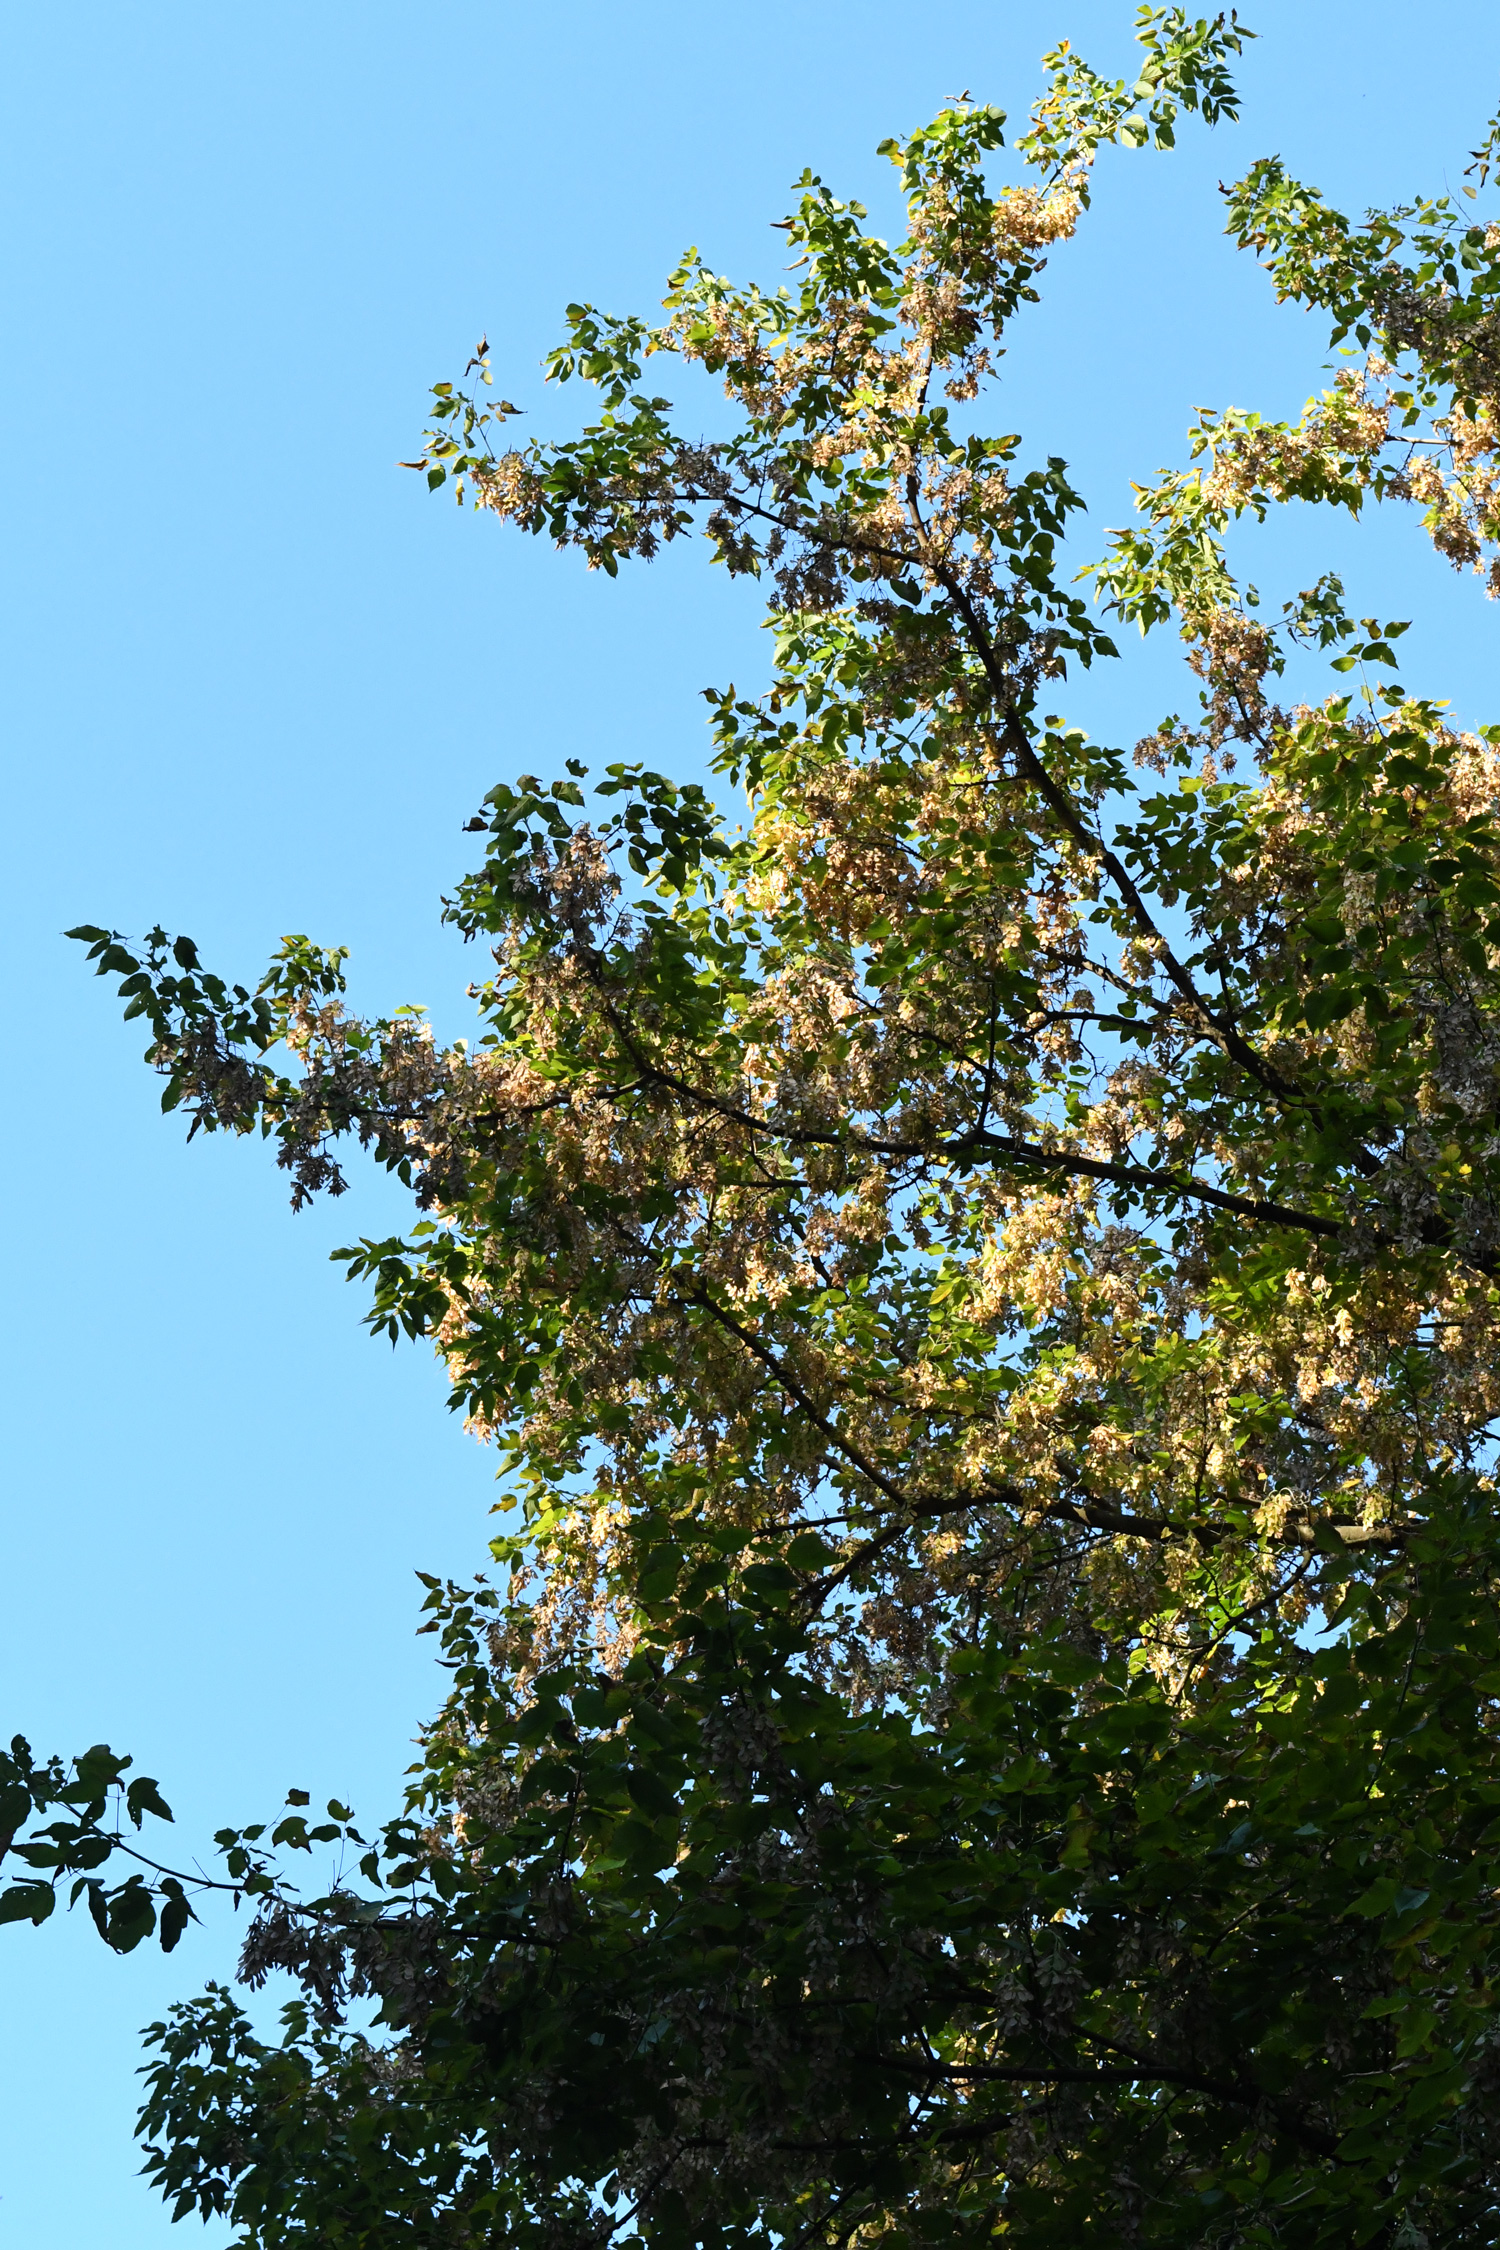 Tree against sky, Prospect Park